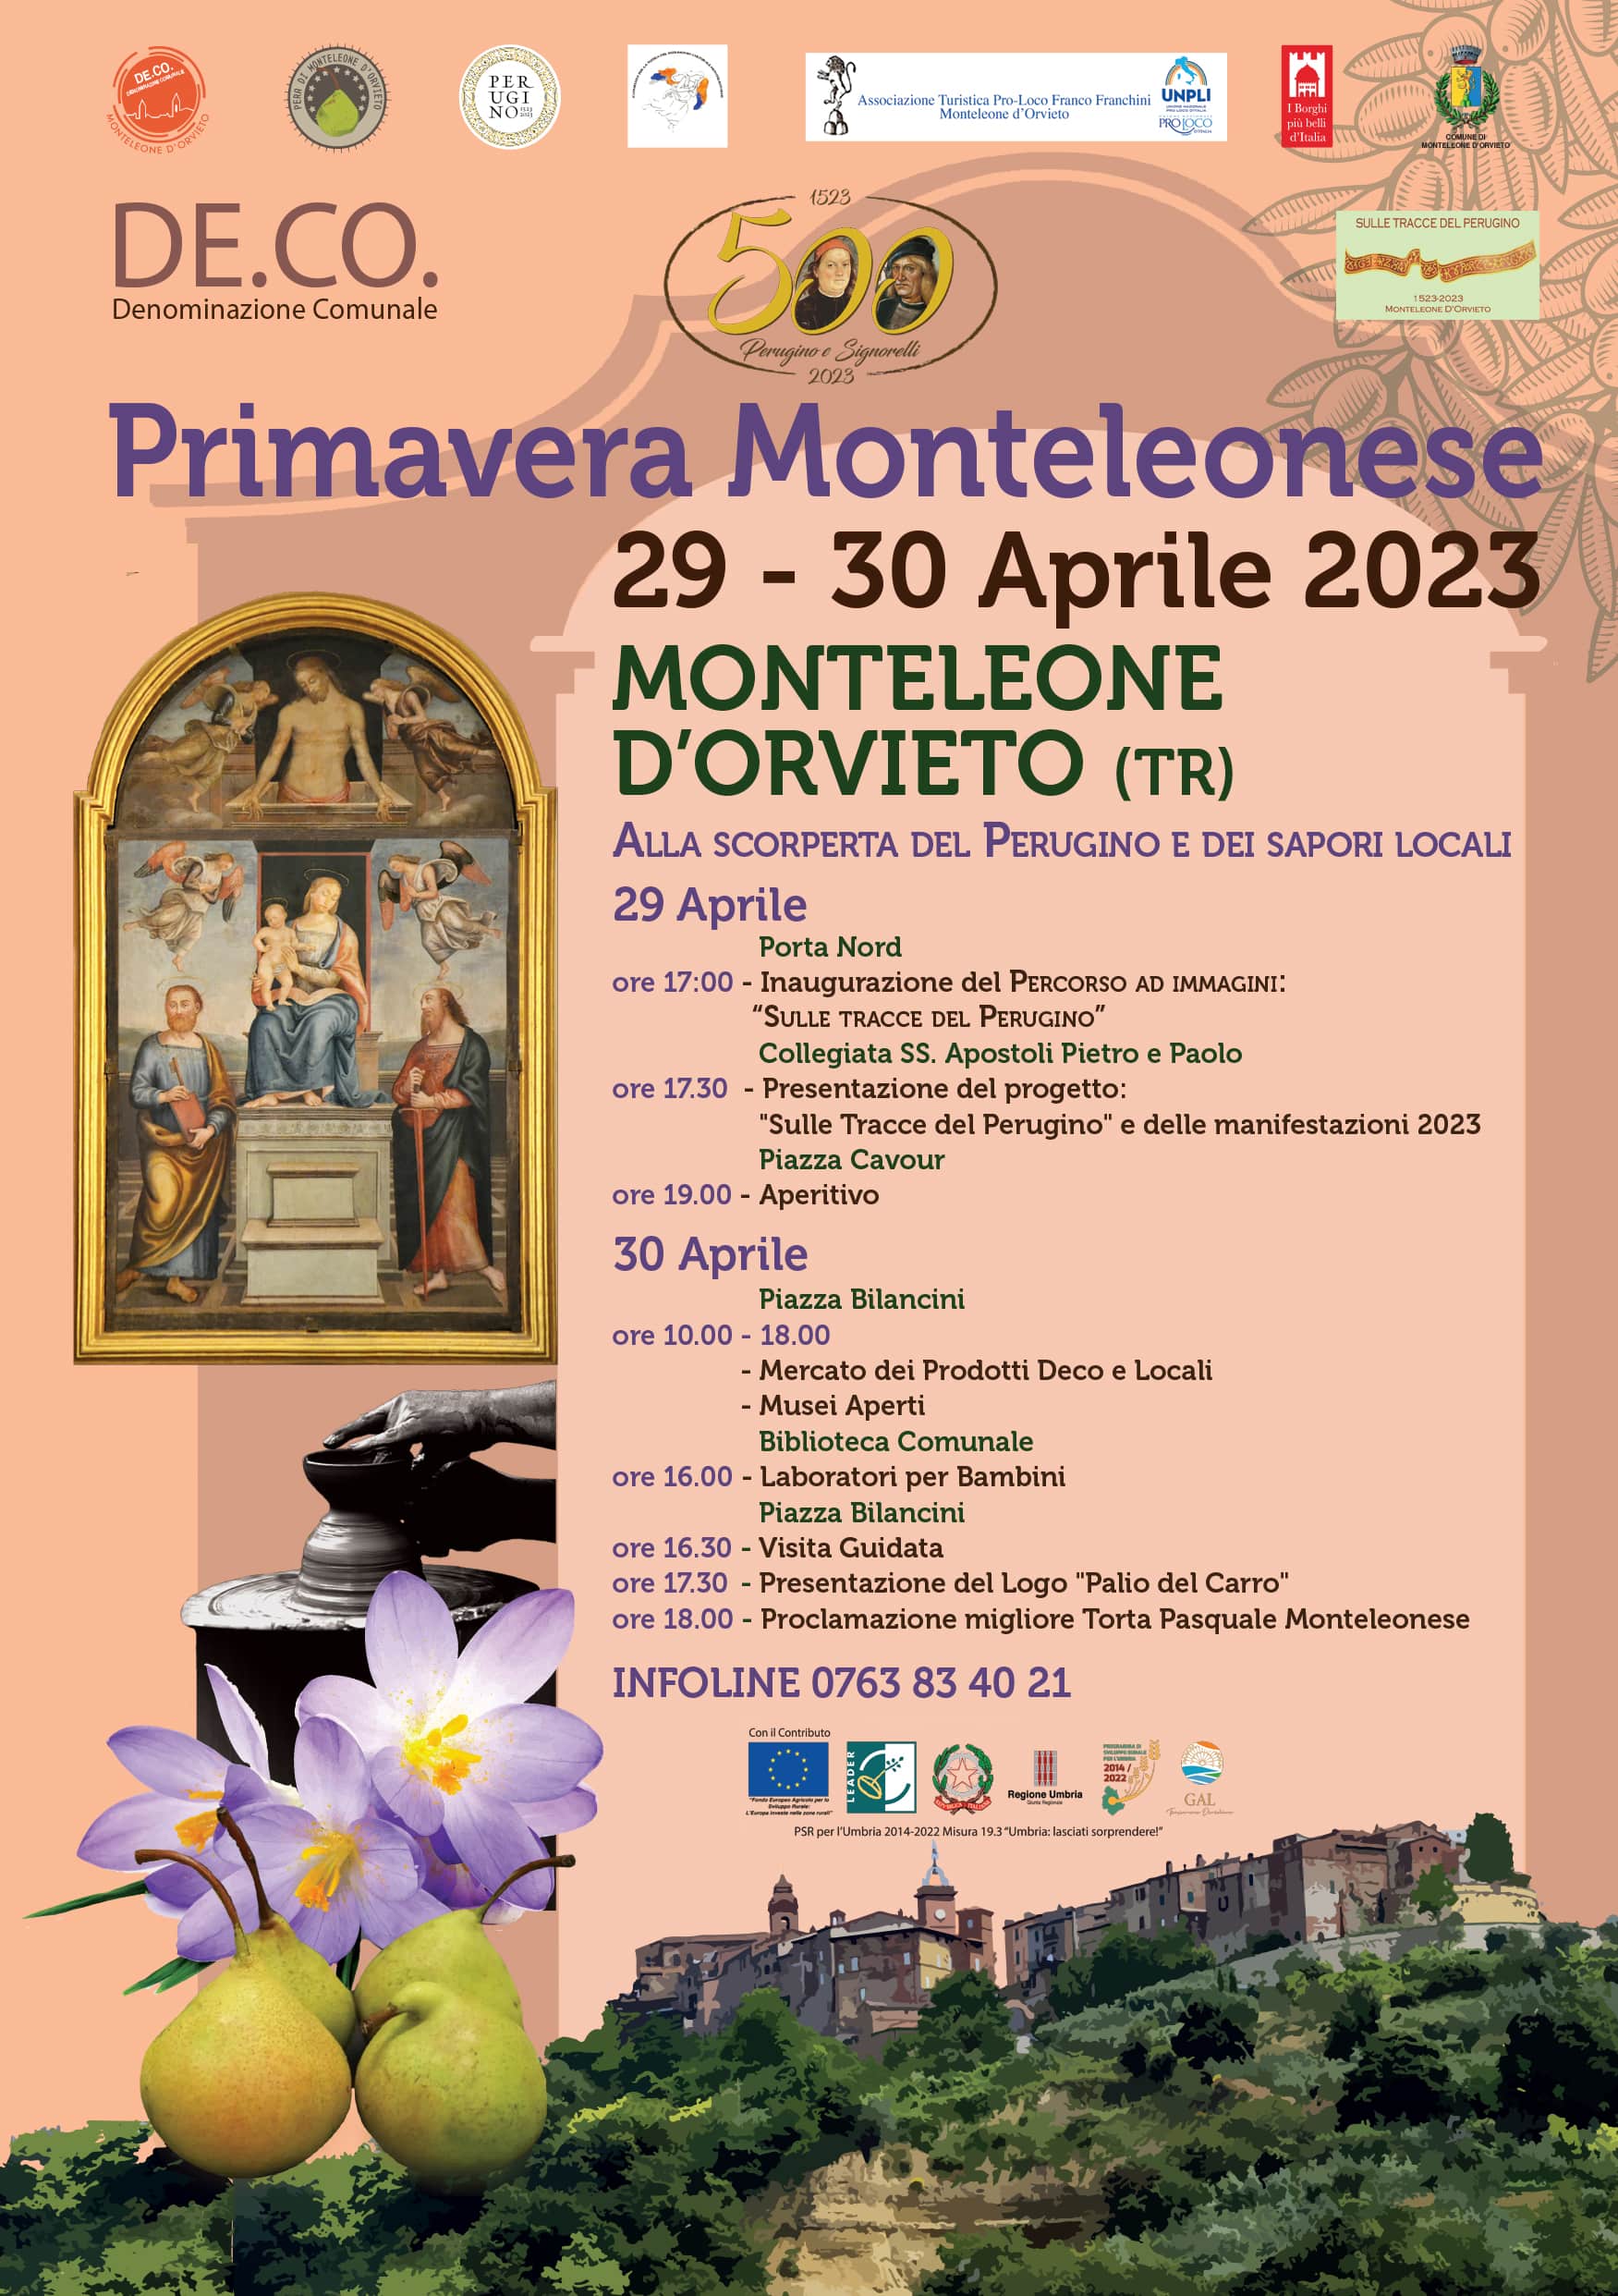 Primavera Monteleonese. Alla scoperta del Perugino e dei sapori locali. 29-30 Aprile 2023